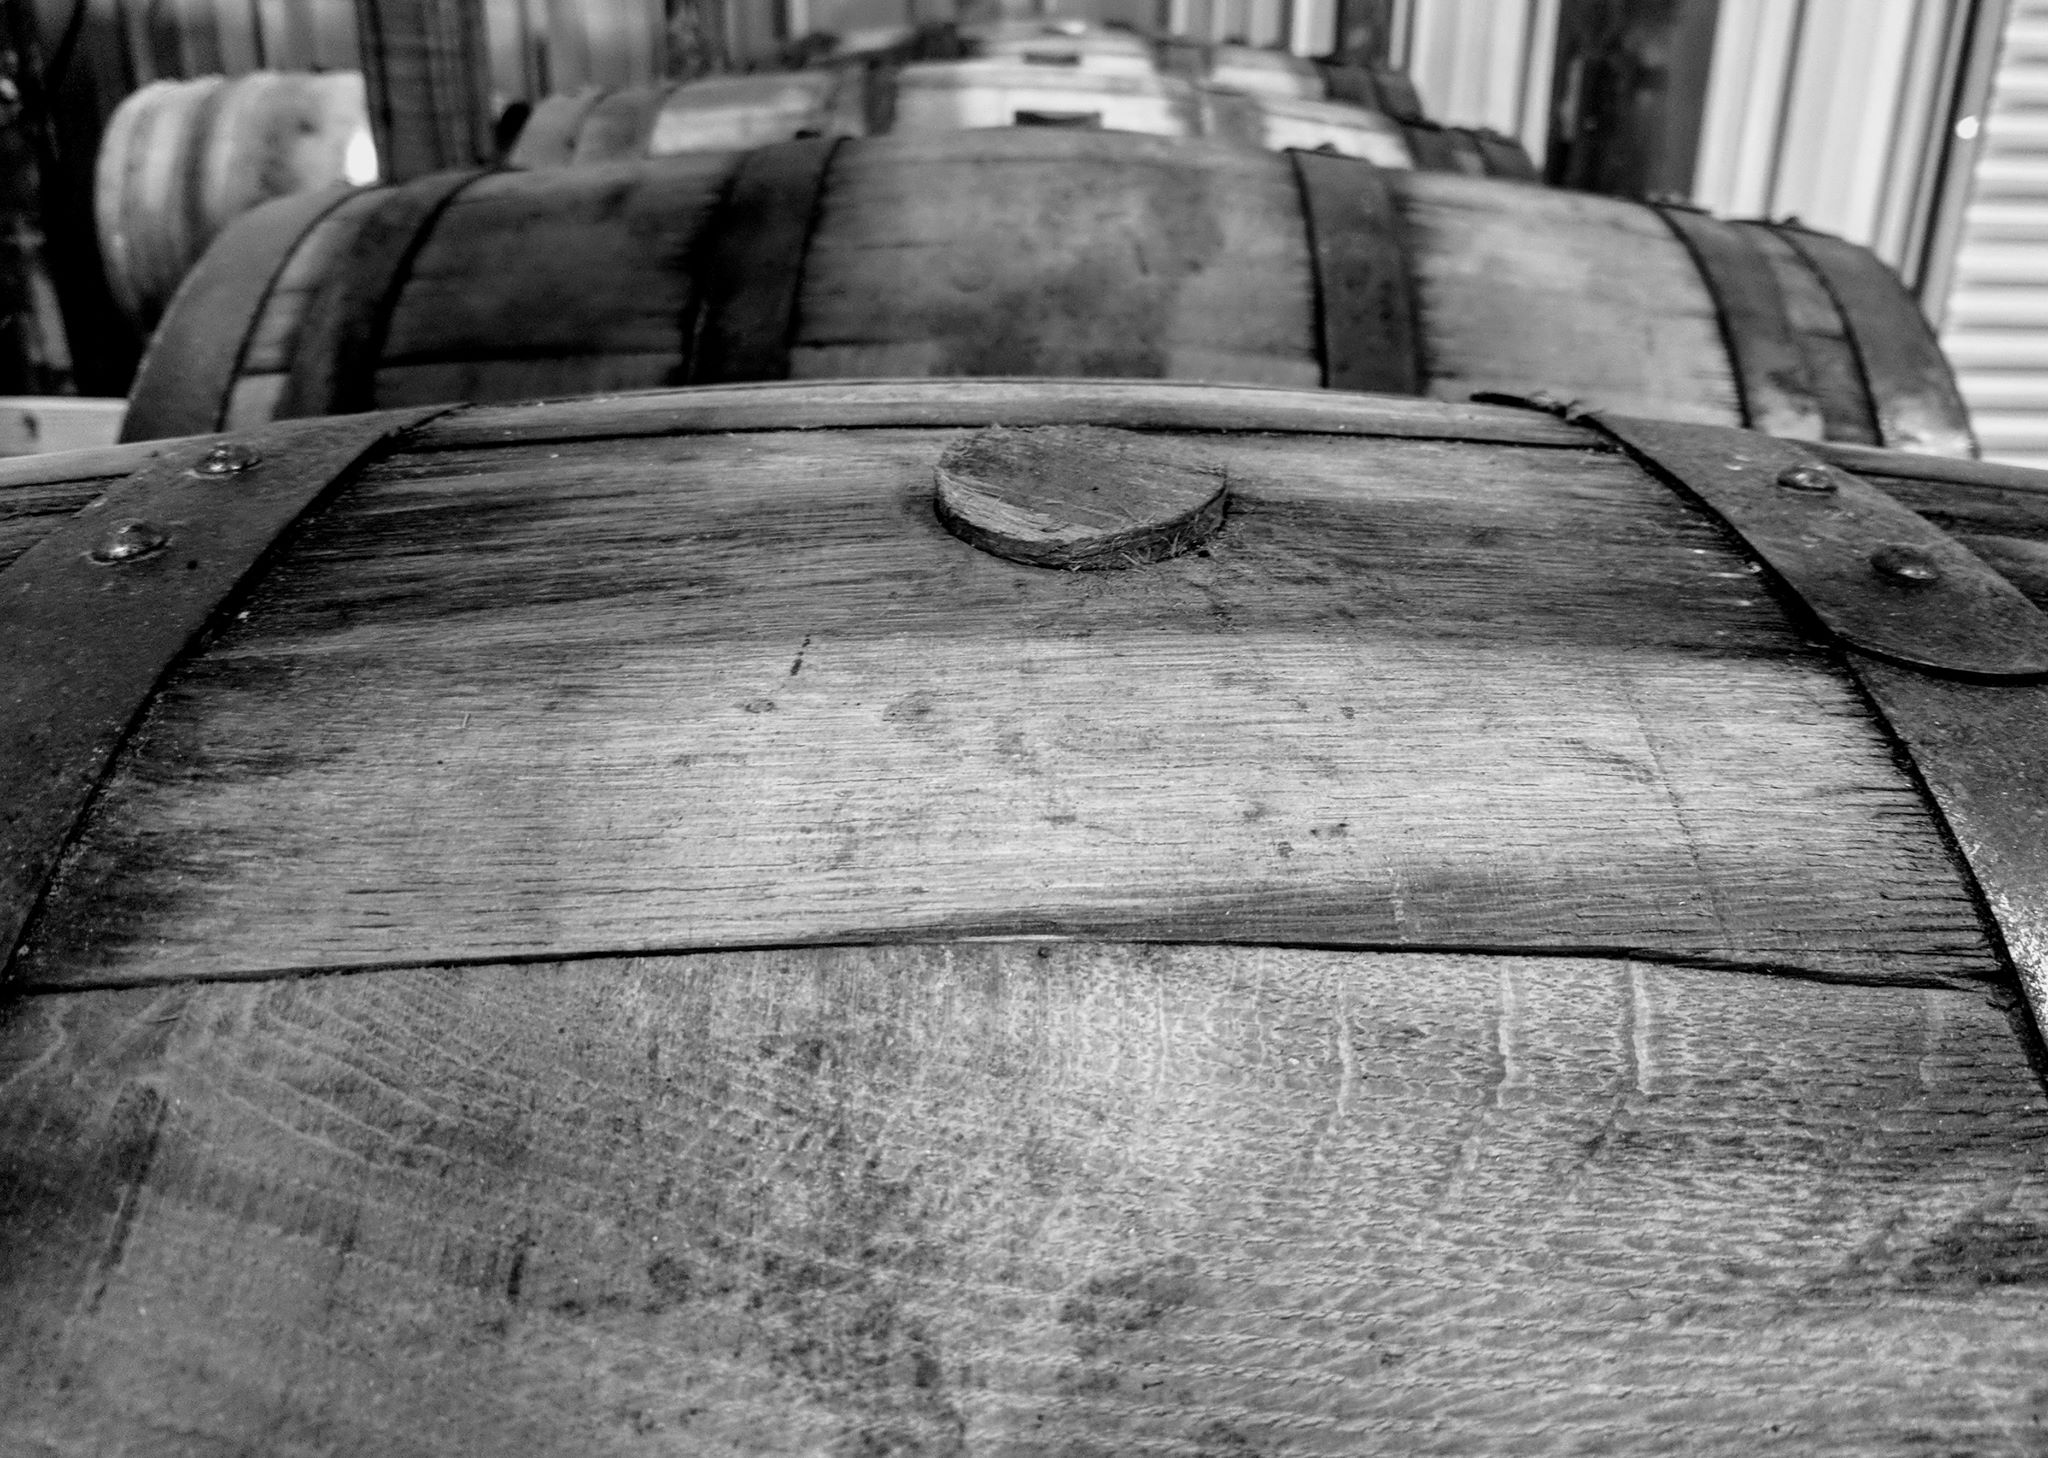 Rye Whiskey Barrel